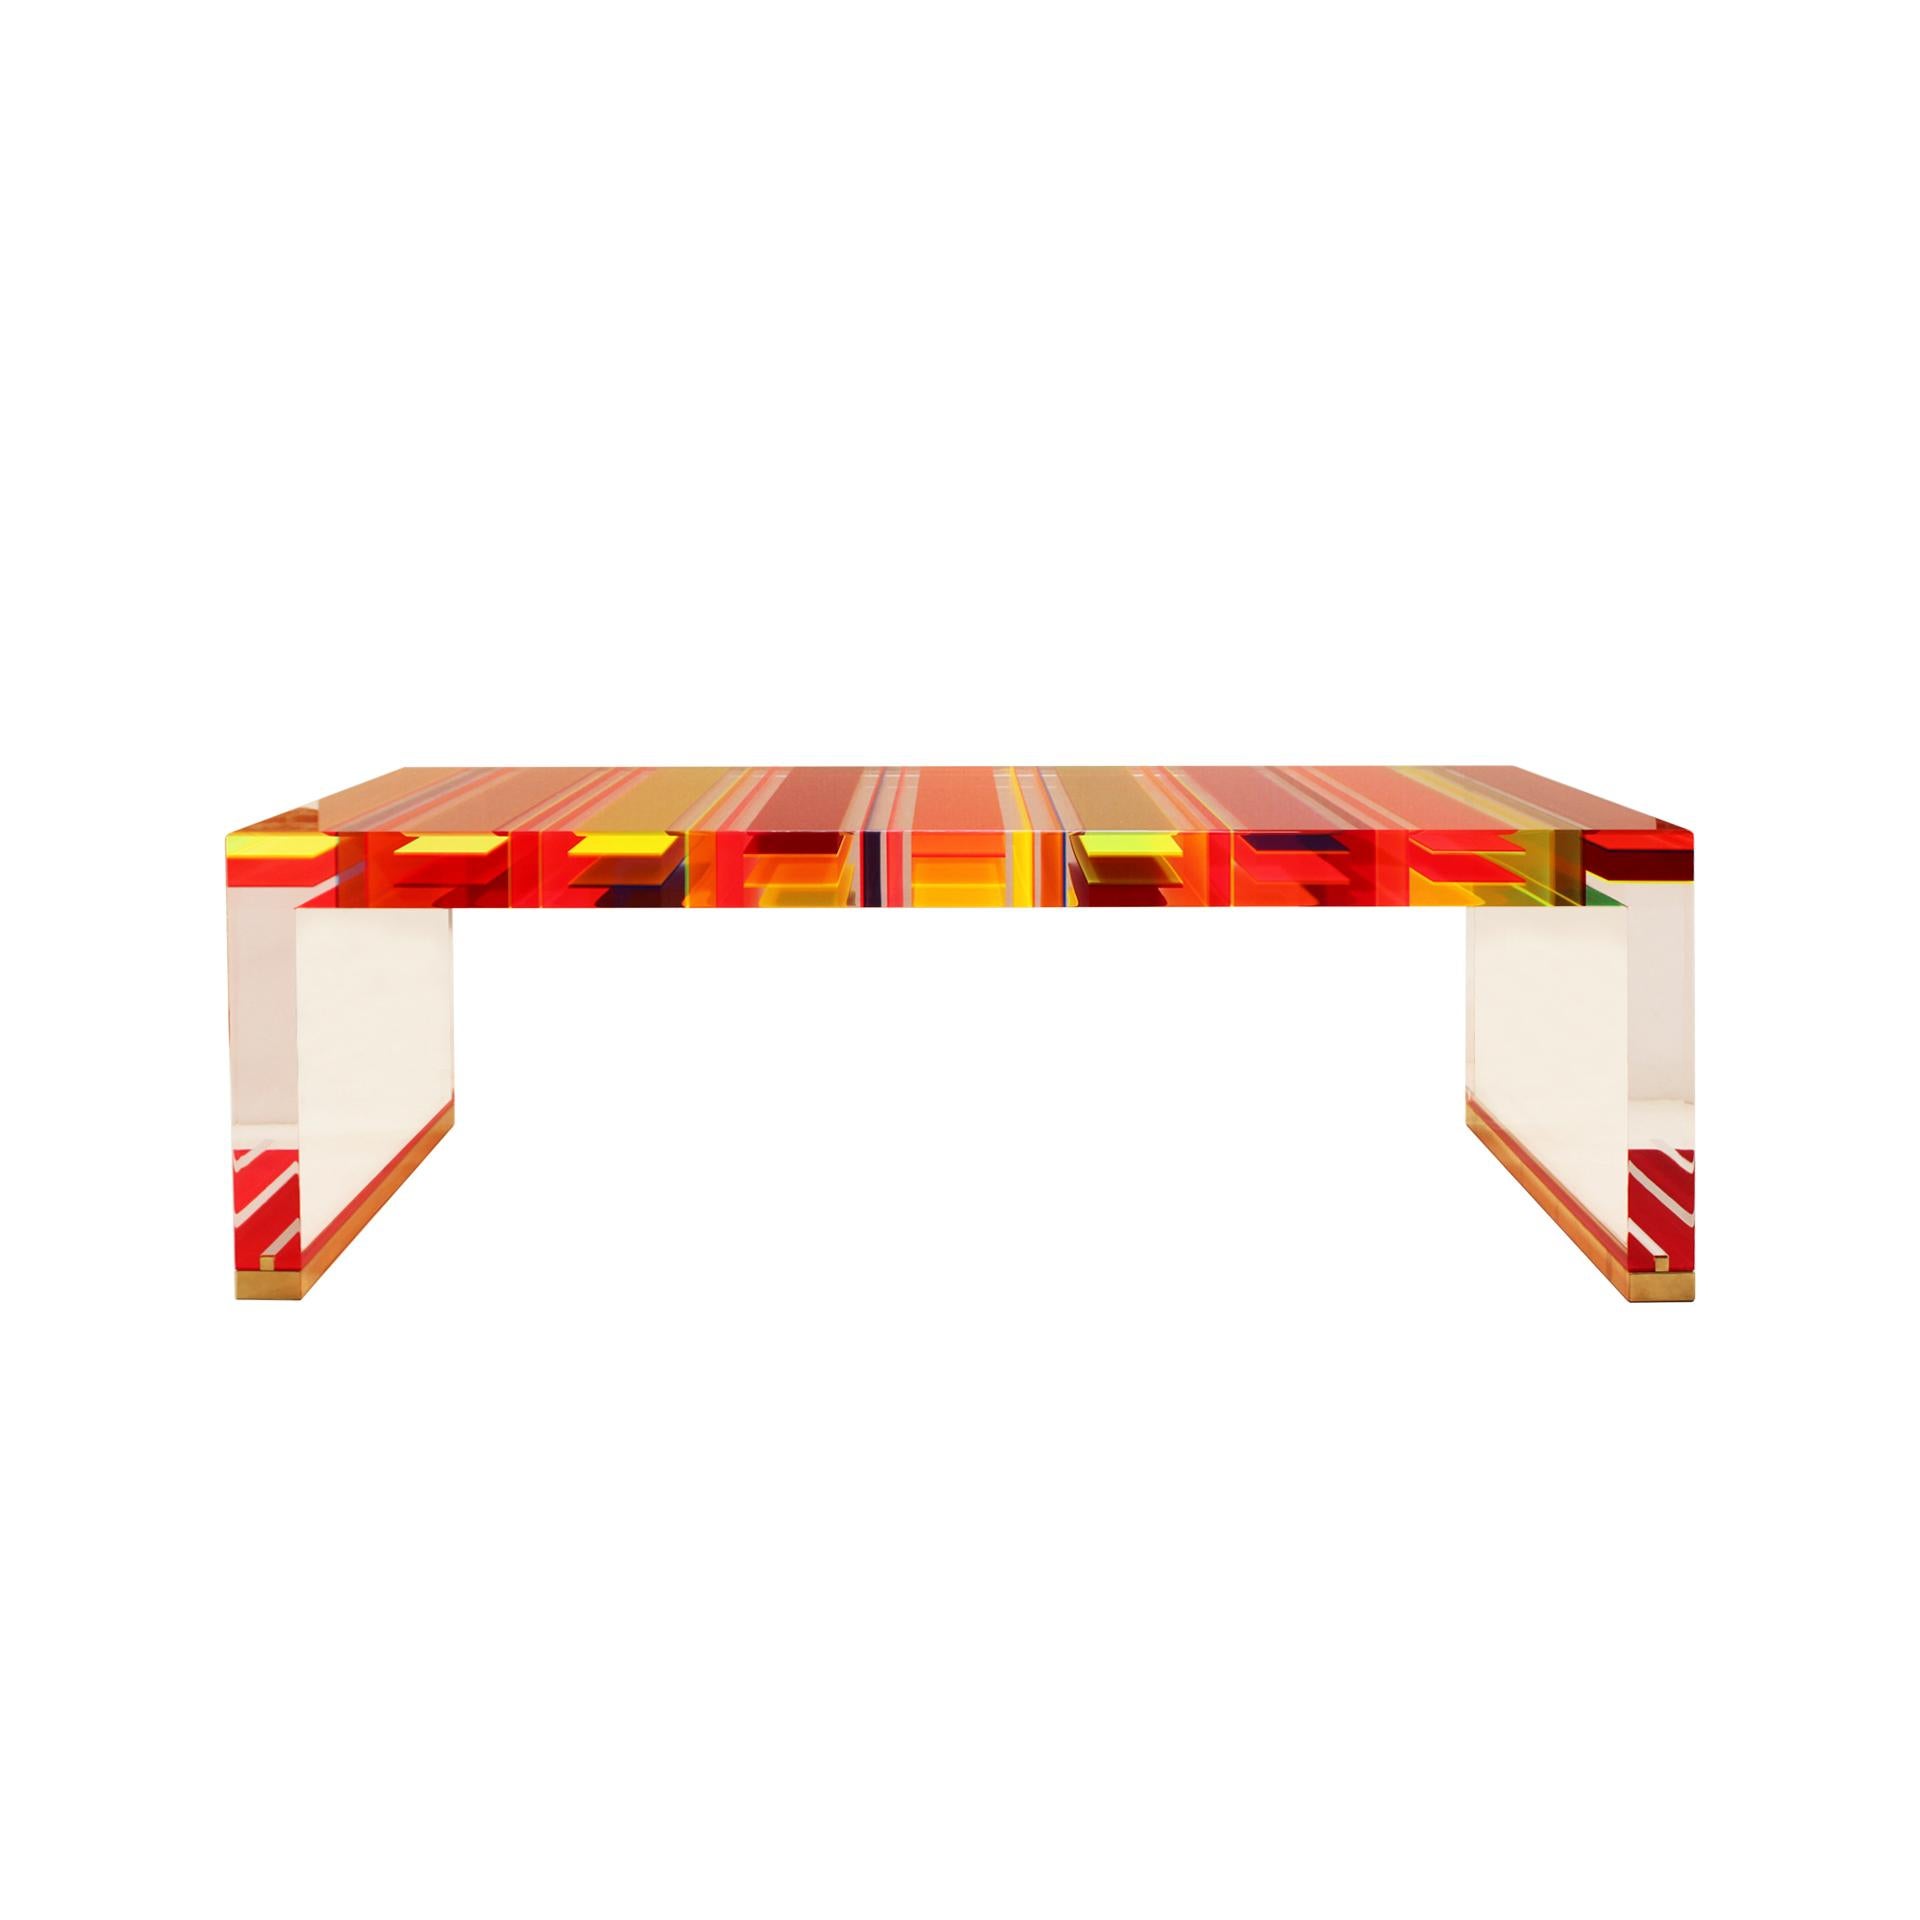 Table basse rectangulaire conçue par le Studio Superego de Milan, réalisée en plexiglas multicolore et transparent de sept centimètres d'épaisseur et dont les pieds sont finis en laiton.

Superego Studio est un studio de design basé à Milan, en